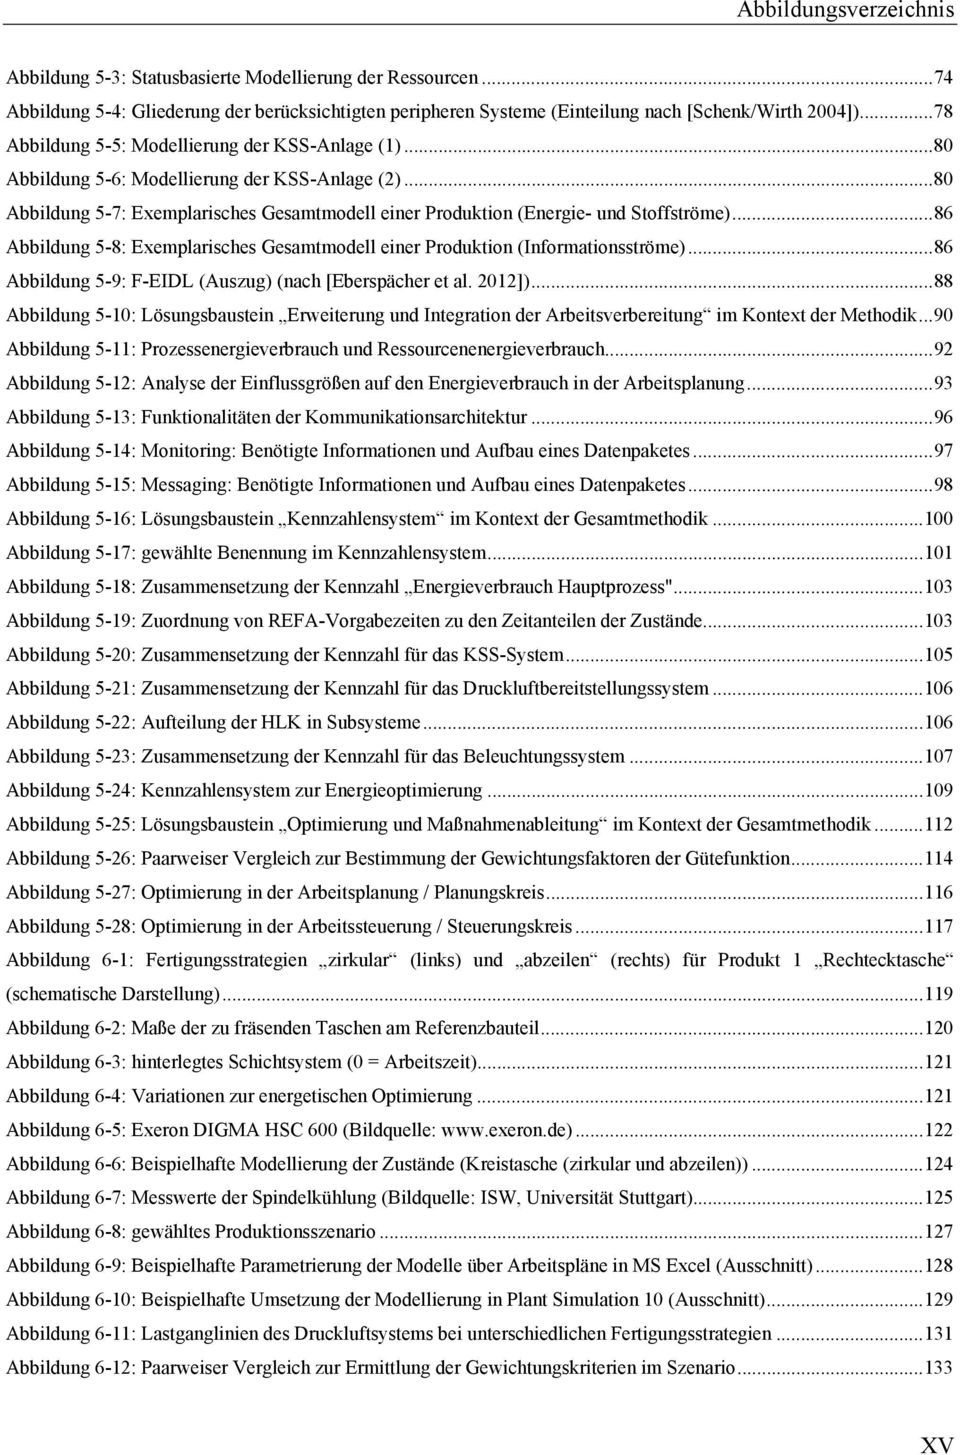 .. 86 Abbildung 5-8: Exemplarisches Gesamtmodell einer Produktion (Informationsströme)... 86 Abbildung 5-9: F-EIDL (Auszug) (nach [Eberspächer et al. 2012]).